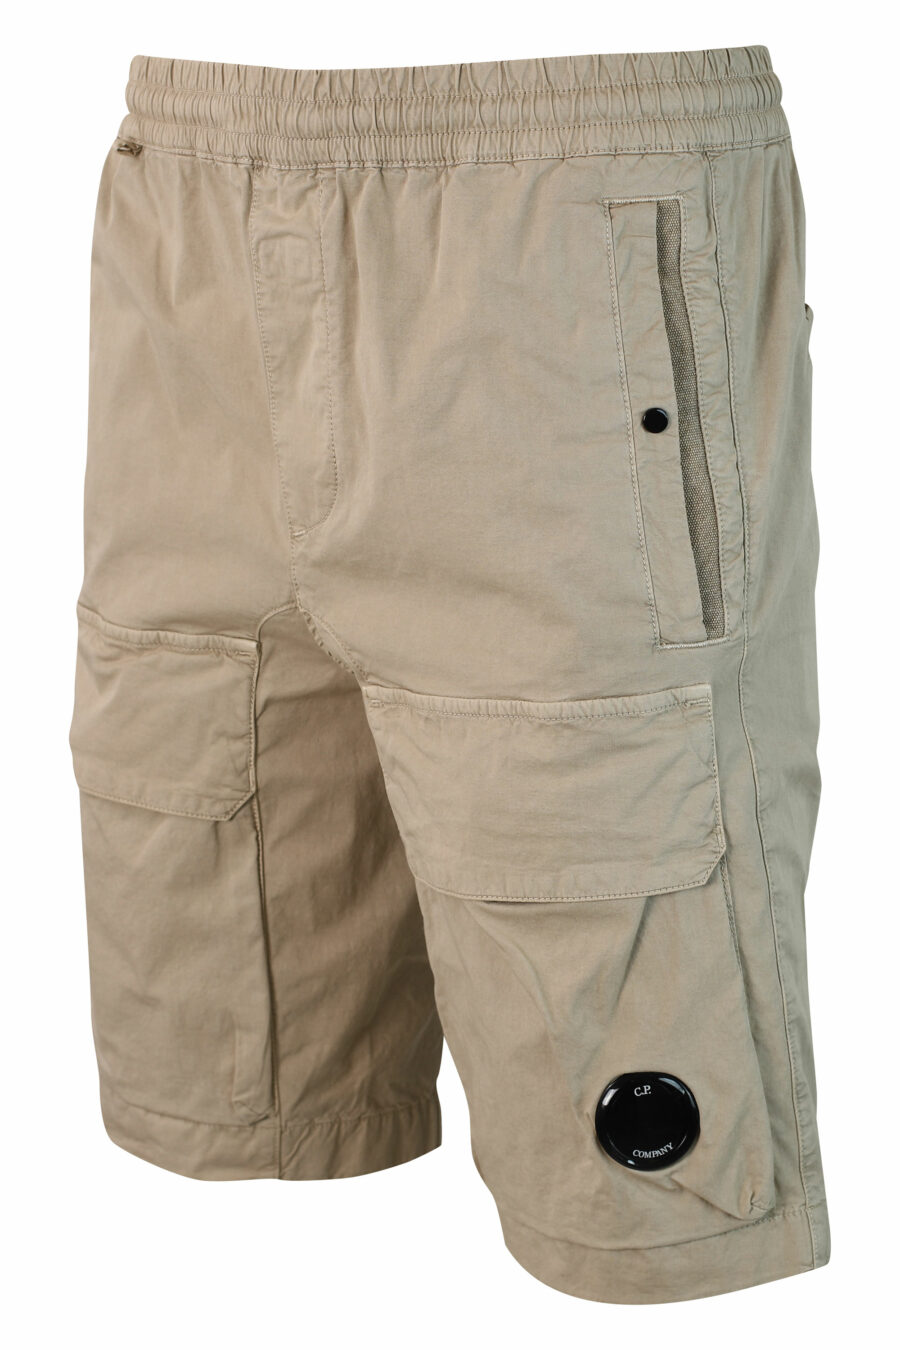 Pantalón corto beige elástico con bolsillos frontales y minilogo circular - IMG 9908 1